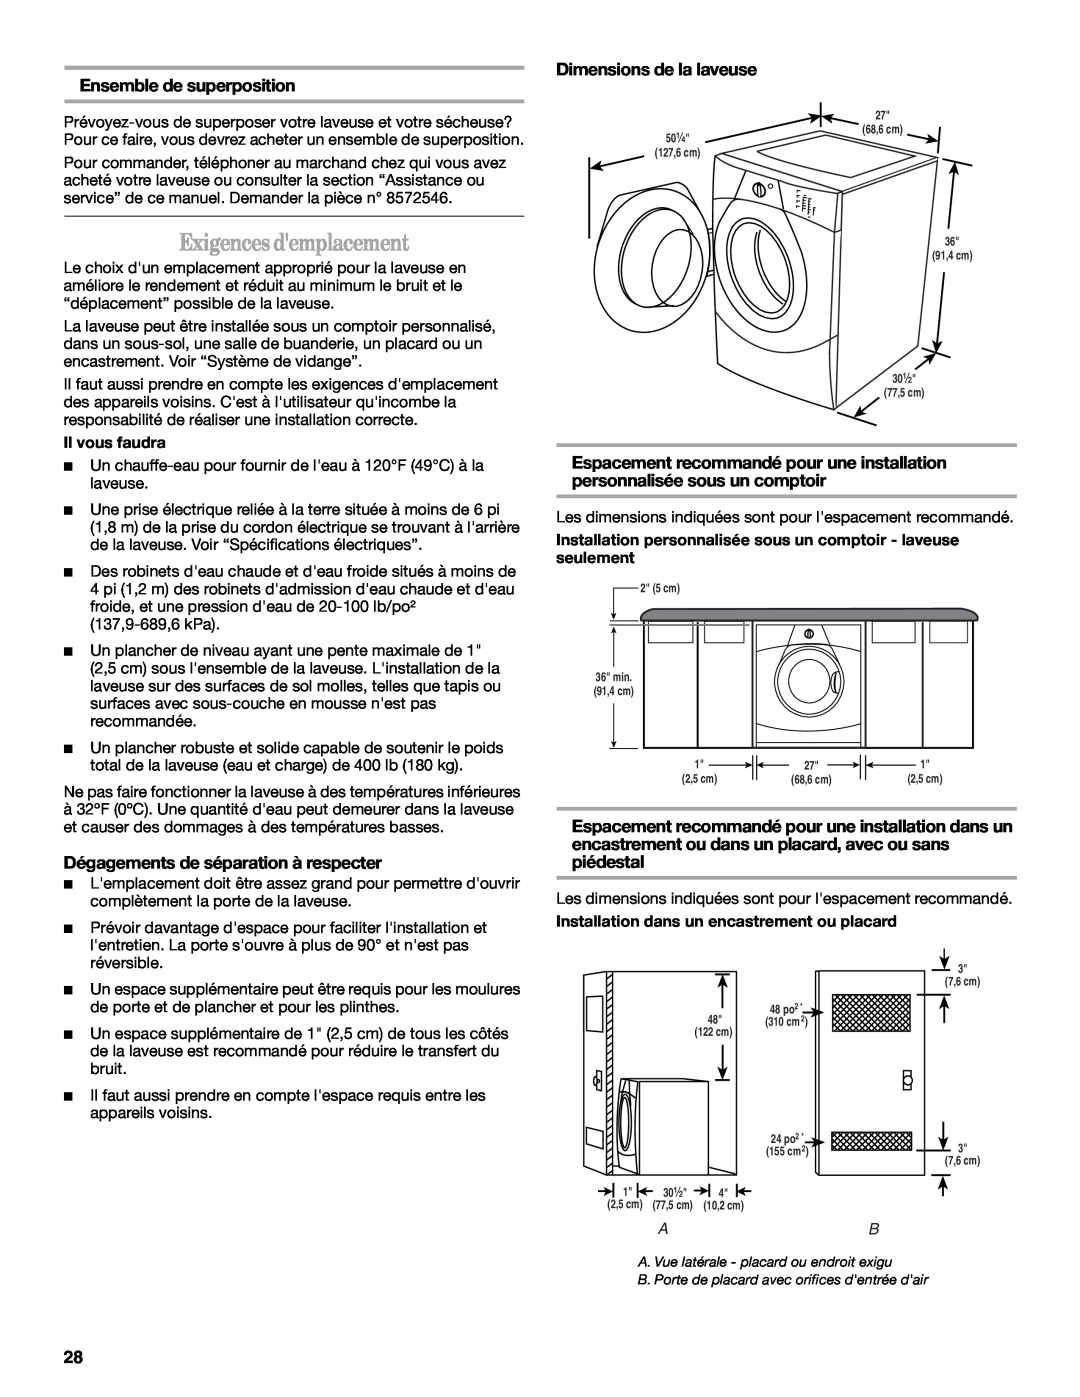 Whirlpool W10063560 manual Exigences demplacement, Ensemble de superposition, Dimensions de la laveuse 